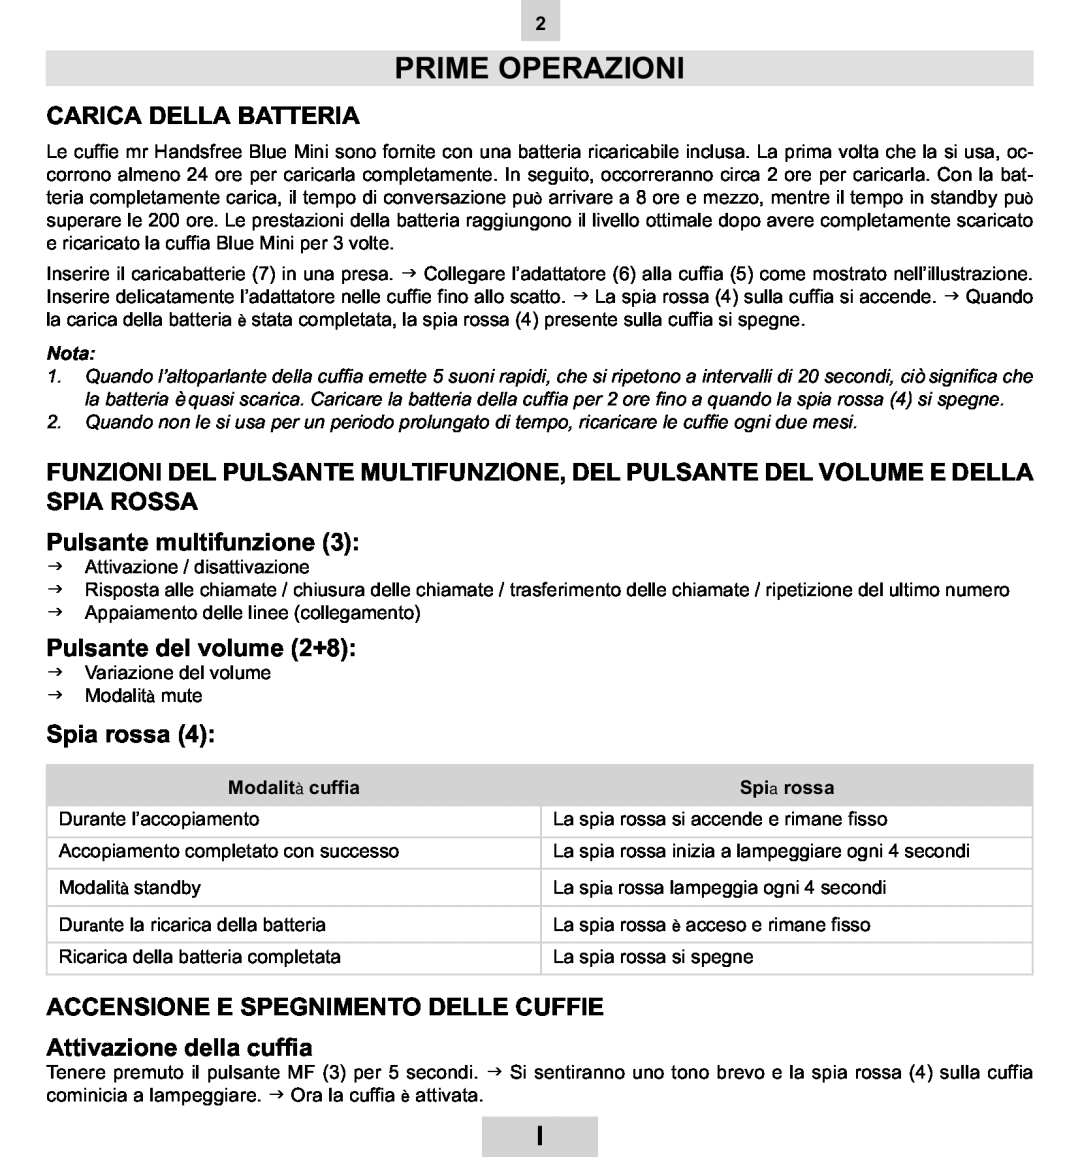 Mr Handsfree BLUE MINI manual Prime Operazioni, Carica Della Batteria, Pulsante multifunzione, Pulsante del volume 2+8 